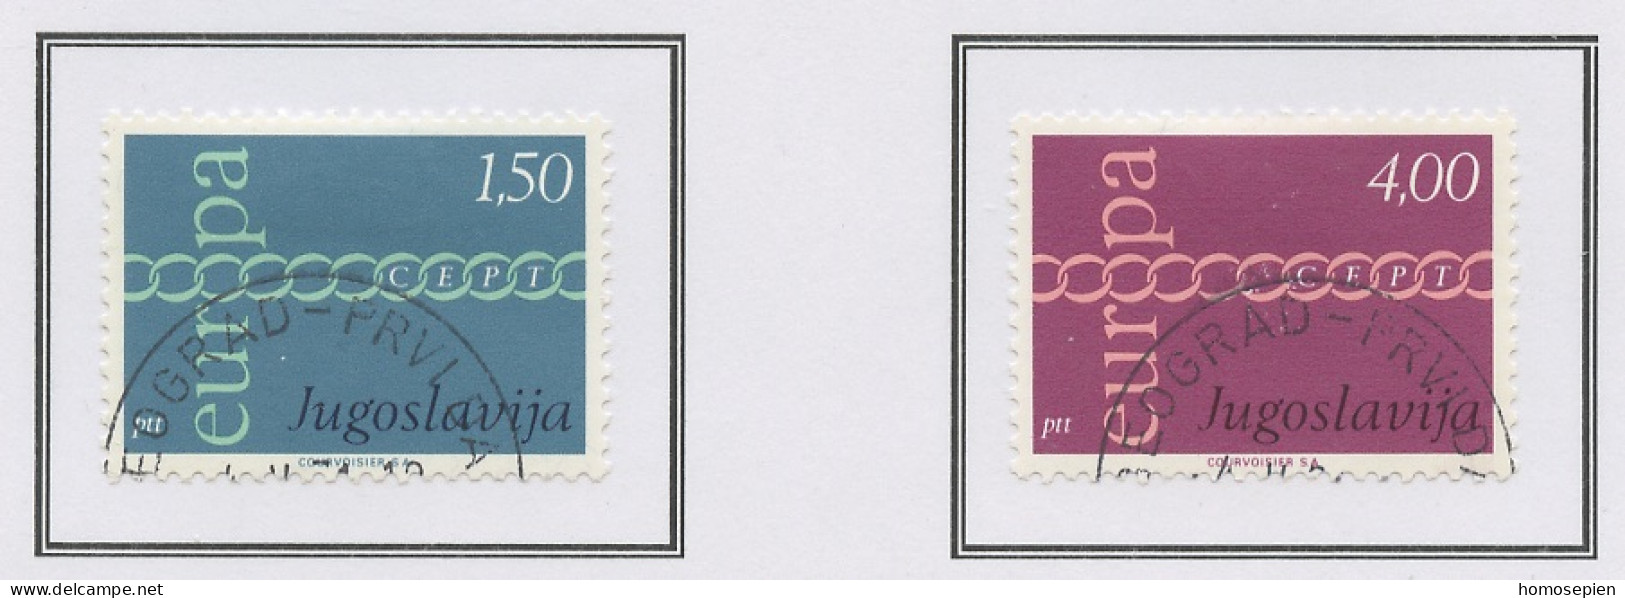 Europa CEPT 1971 Yougoslavie - Jugoslawien - Yugoslavia Y&T N°1301 à 1302 - Michel N°1416 à 1417 (o) - 1971